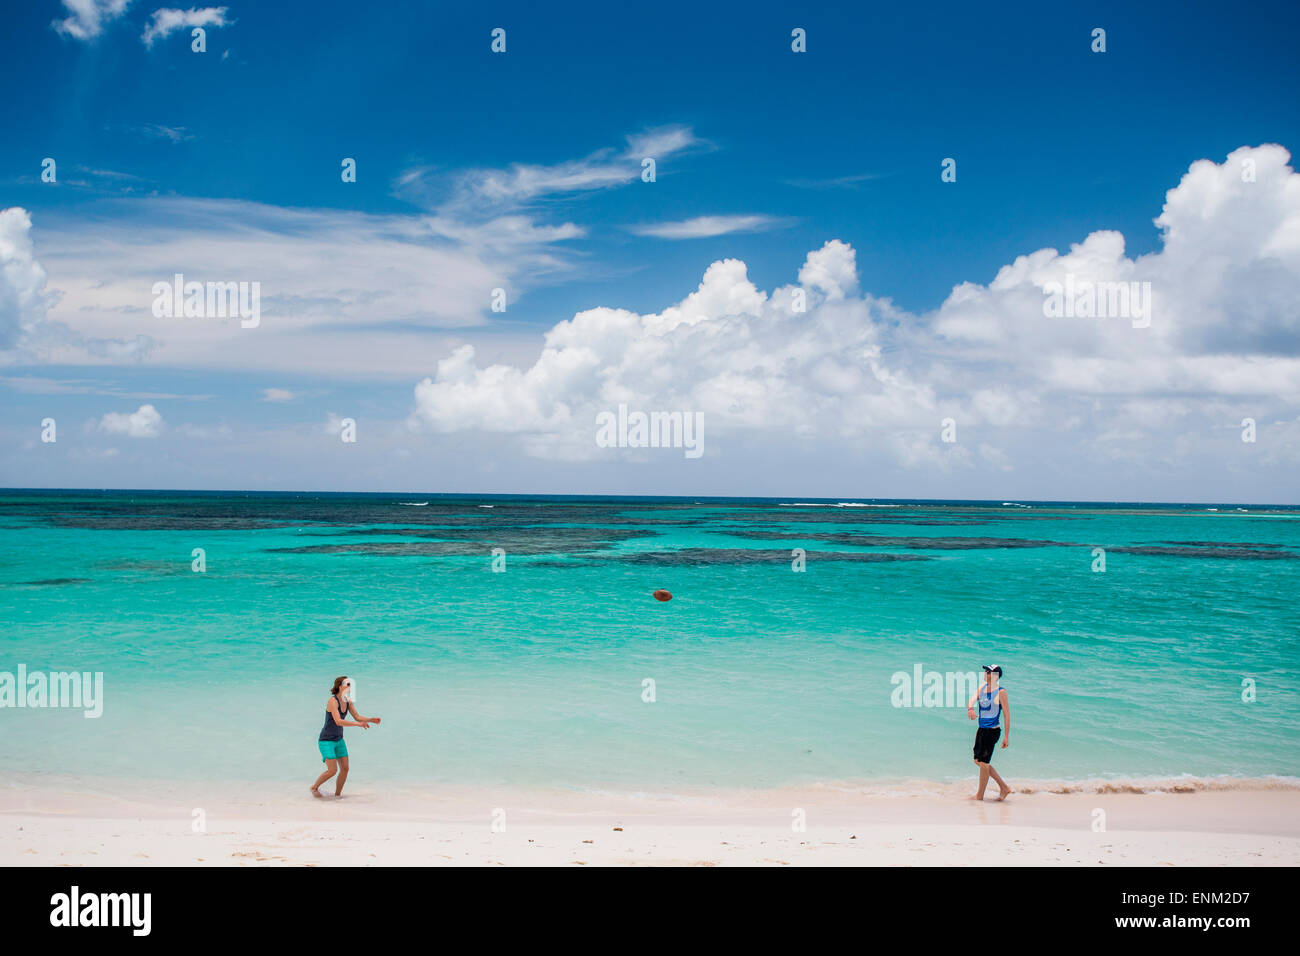 KUH WRECK BEACH RESORT, BRITISCHE JUNGFERNINSELN, KARIBIK. Ein Mann und eine Frau werfen einen Fußball auf einem weißen Sandstrand mit Türkis Meer hinter. Stockfoto